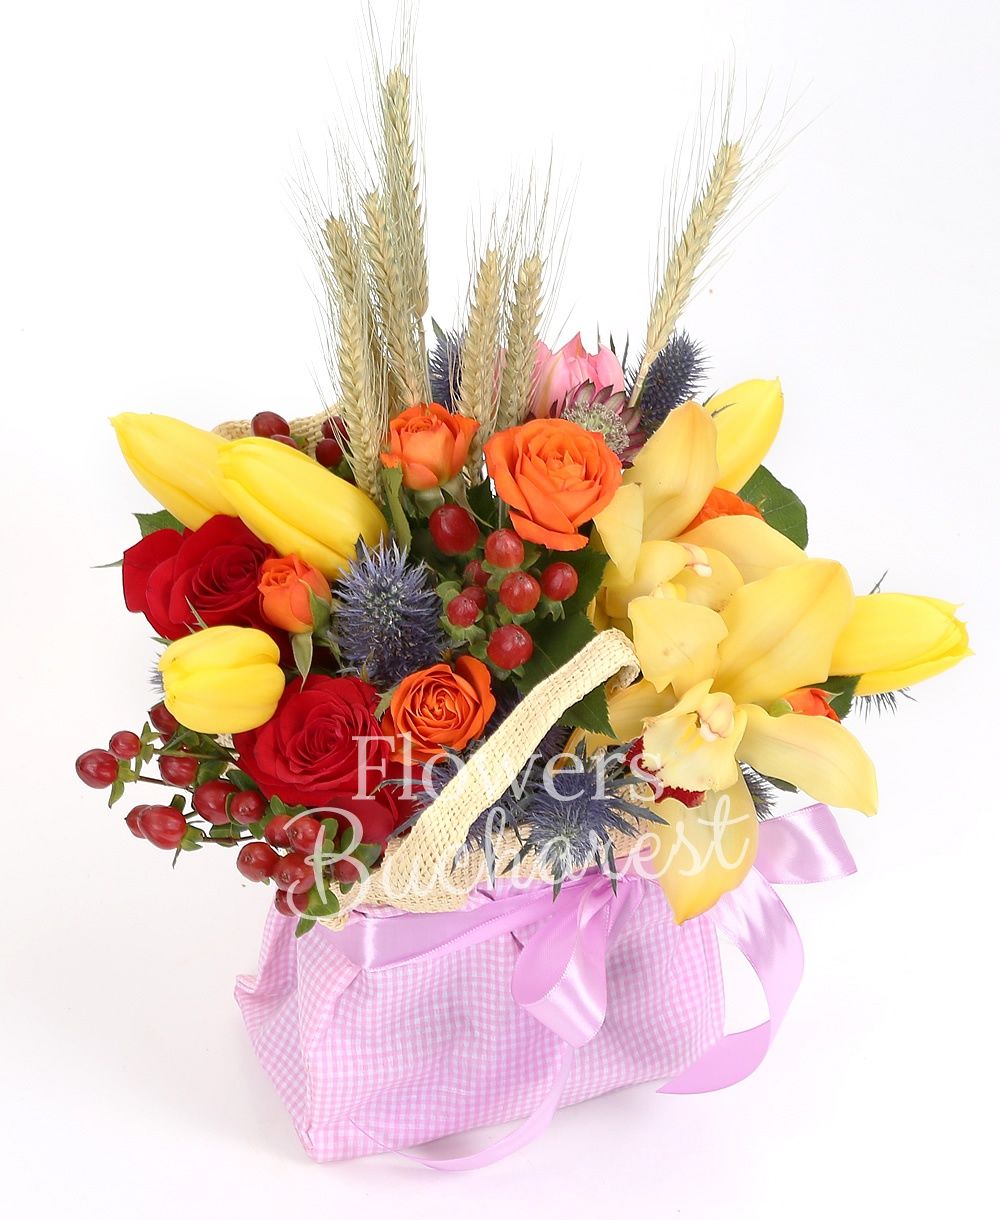 5 yellow tulips, 3 red roses, 2 orange miniroses, eryngium, yellow cymbidium